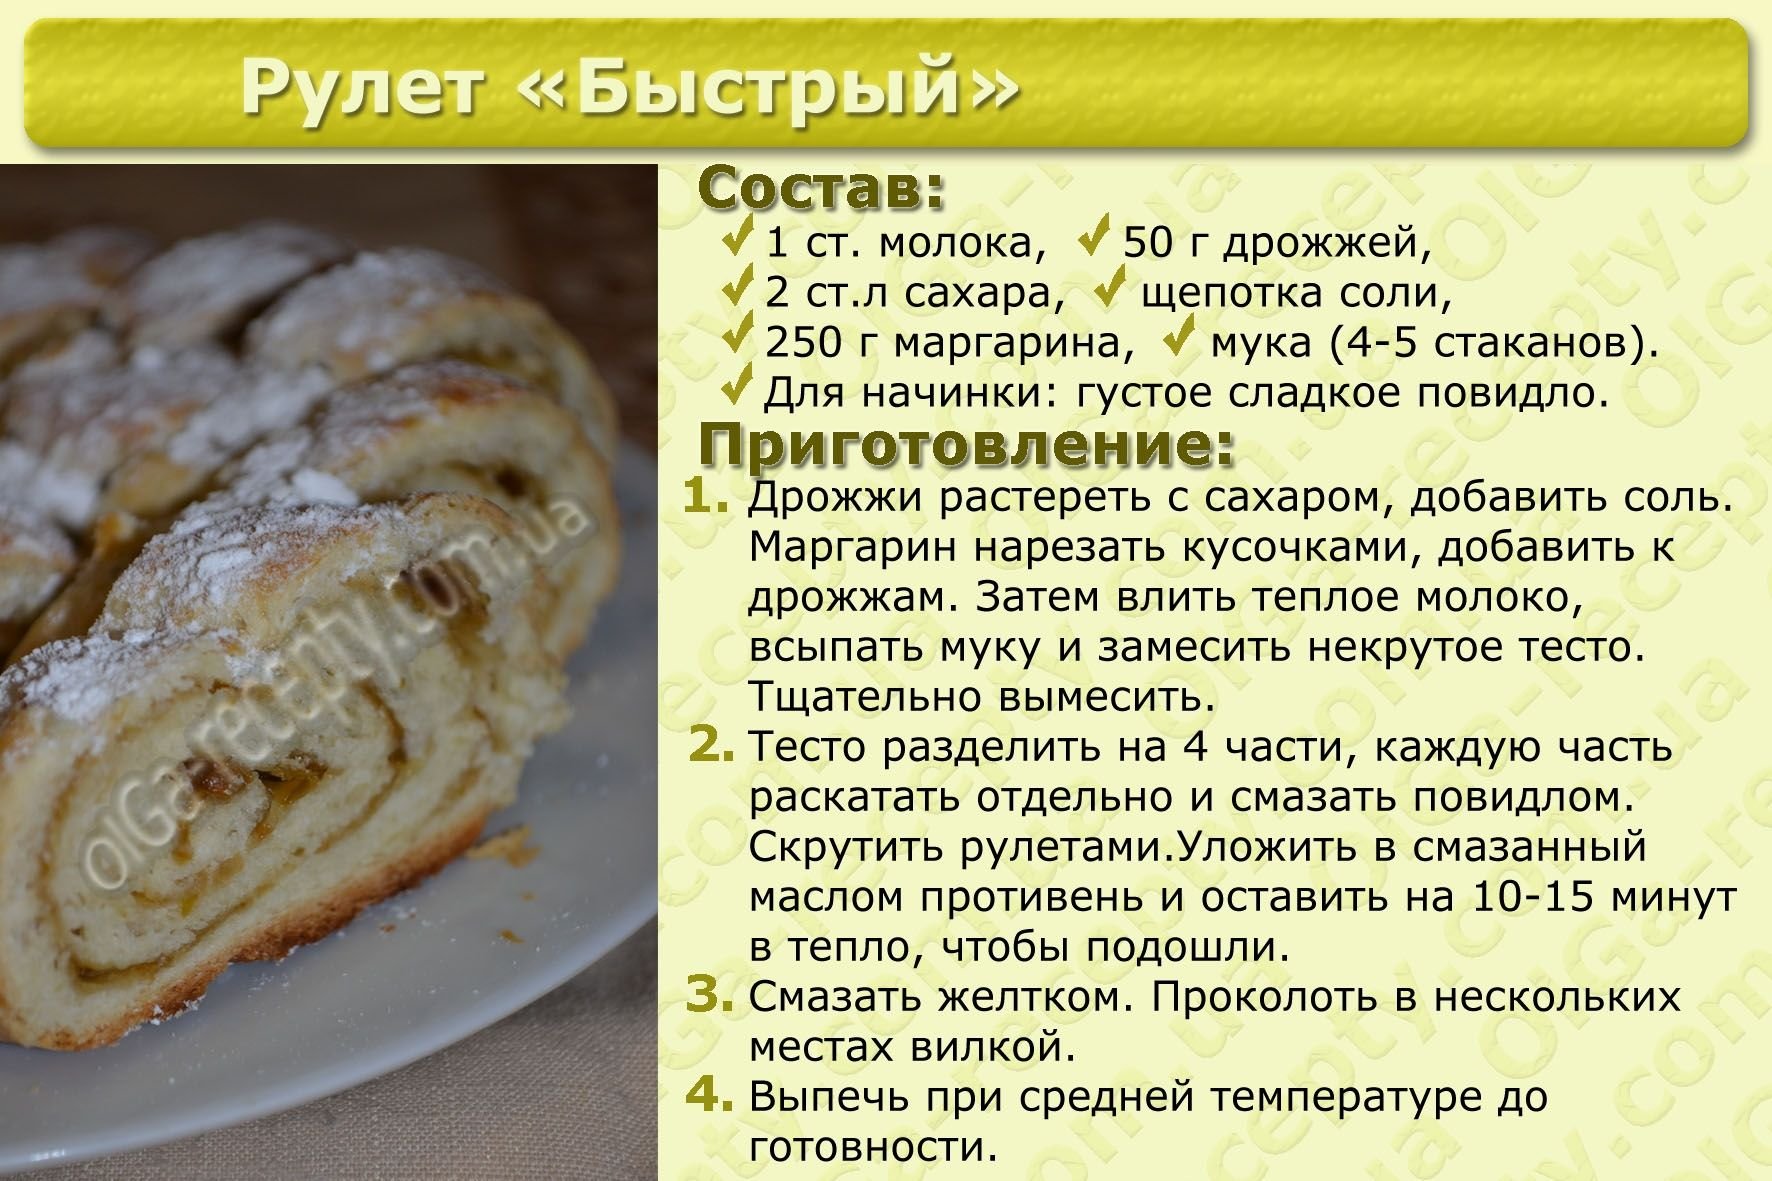 Рецепт теста для тортов в духовке. Рецепты. Рецепты с описанием. Рецепты в картинках с описанием. Рецепты блюд в картинках с описанием.